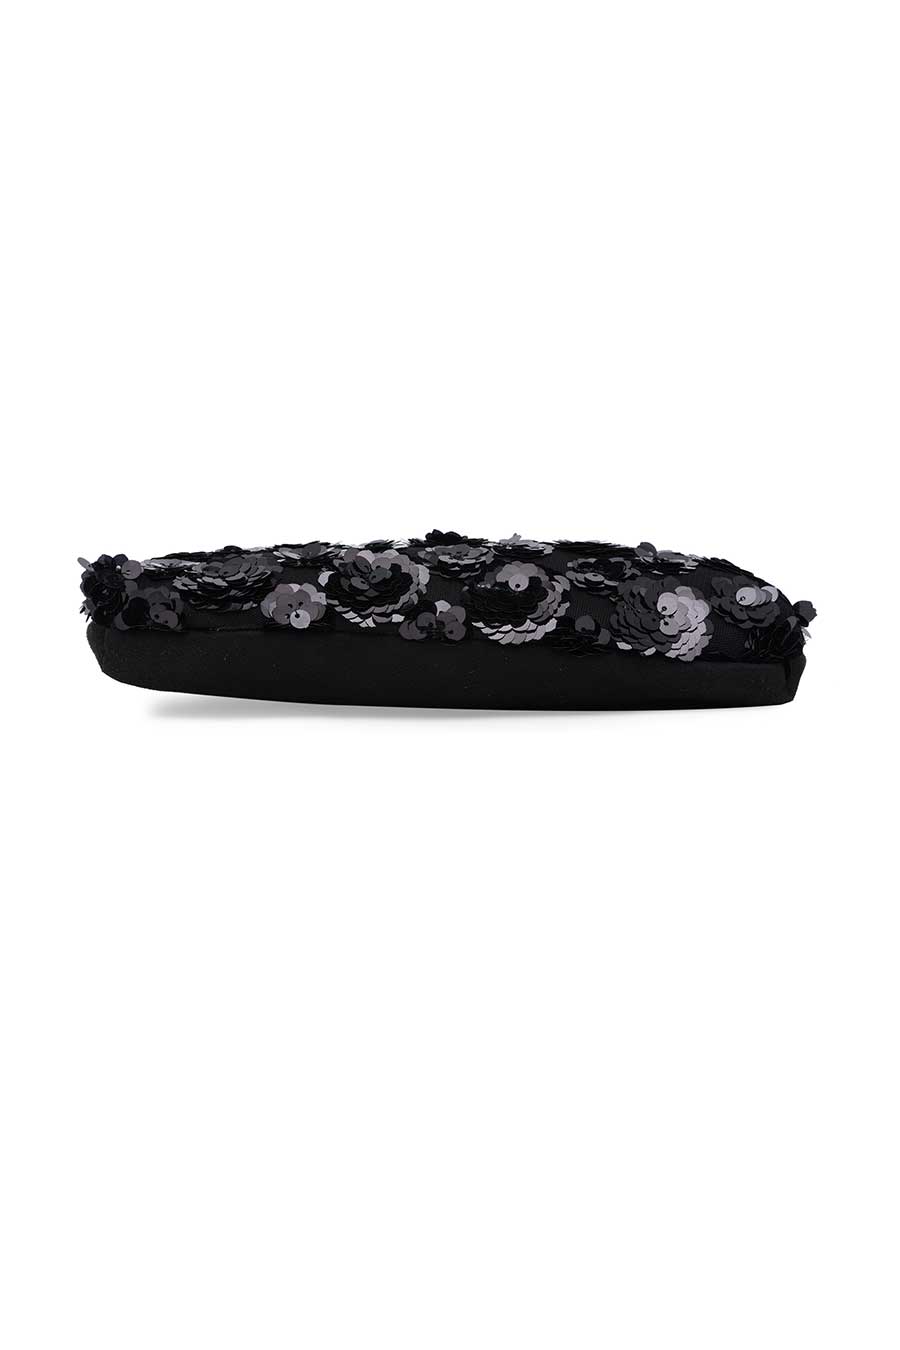 Black Floral Sequin Pouch Clutch